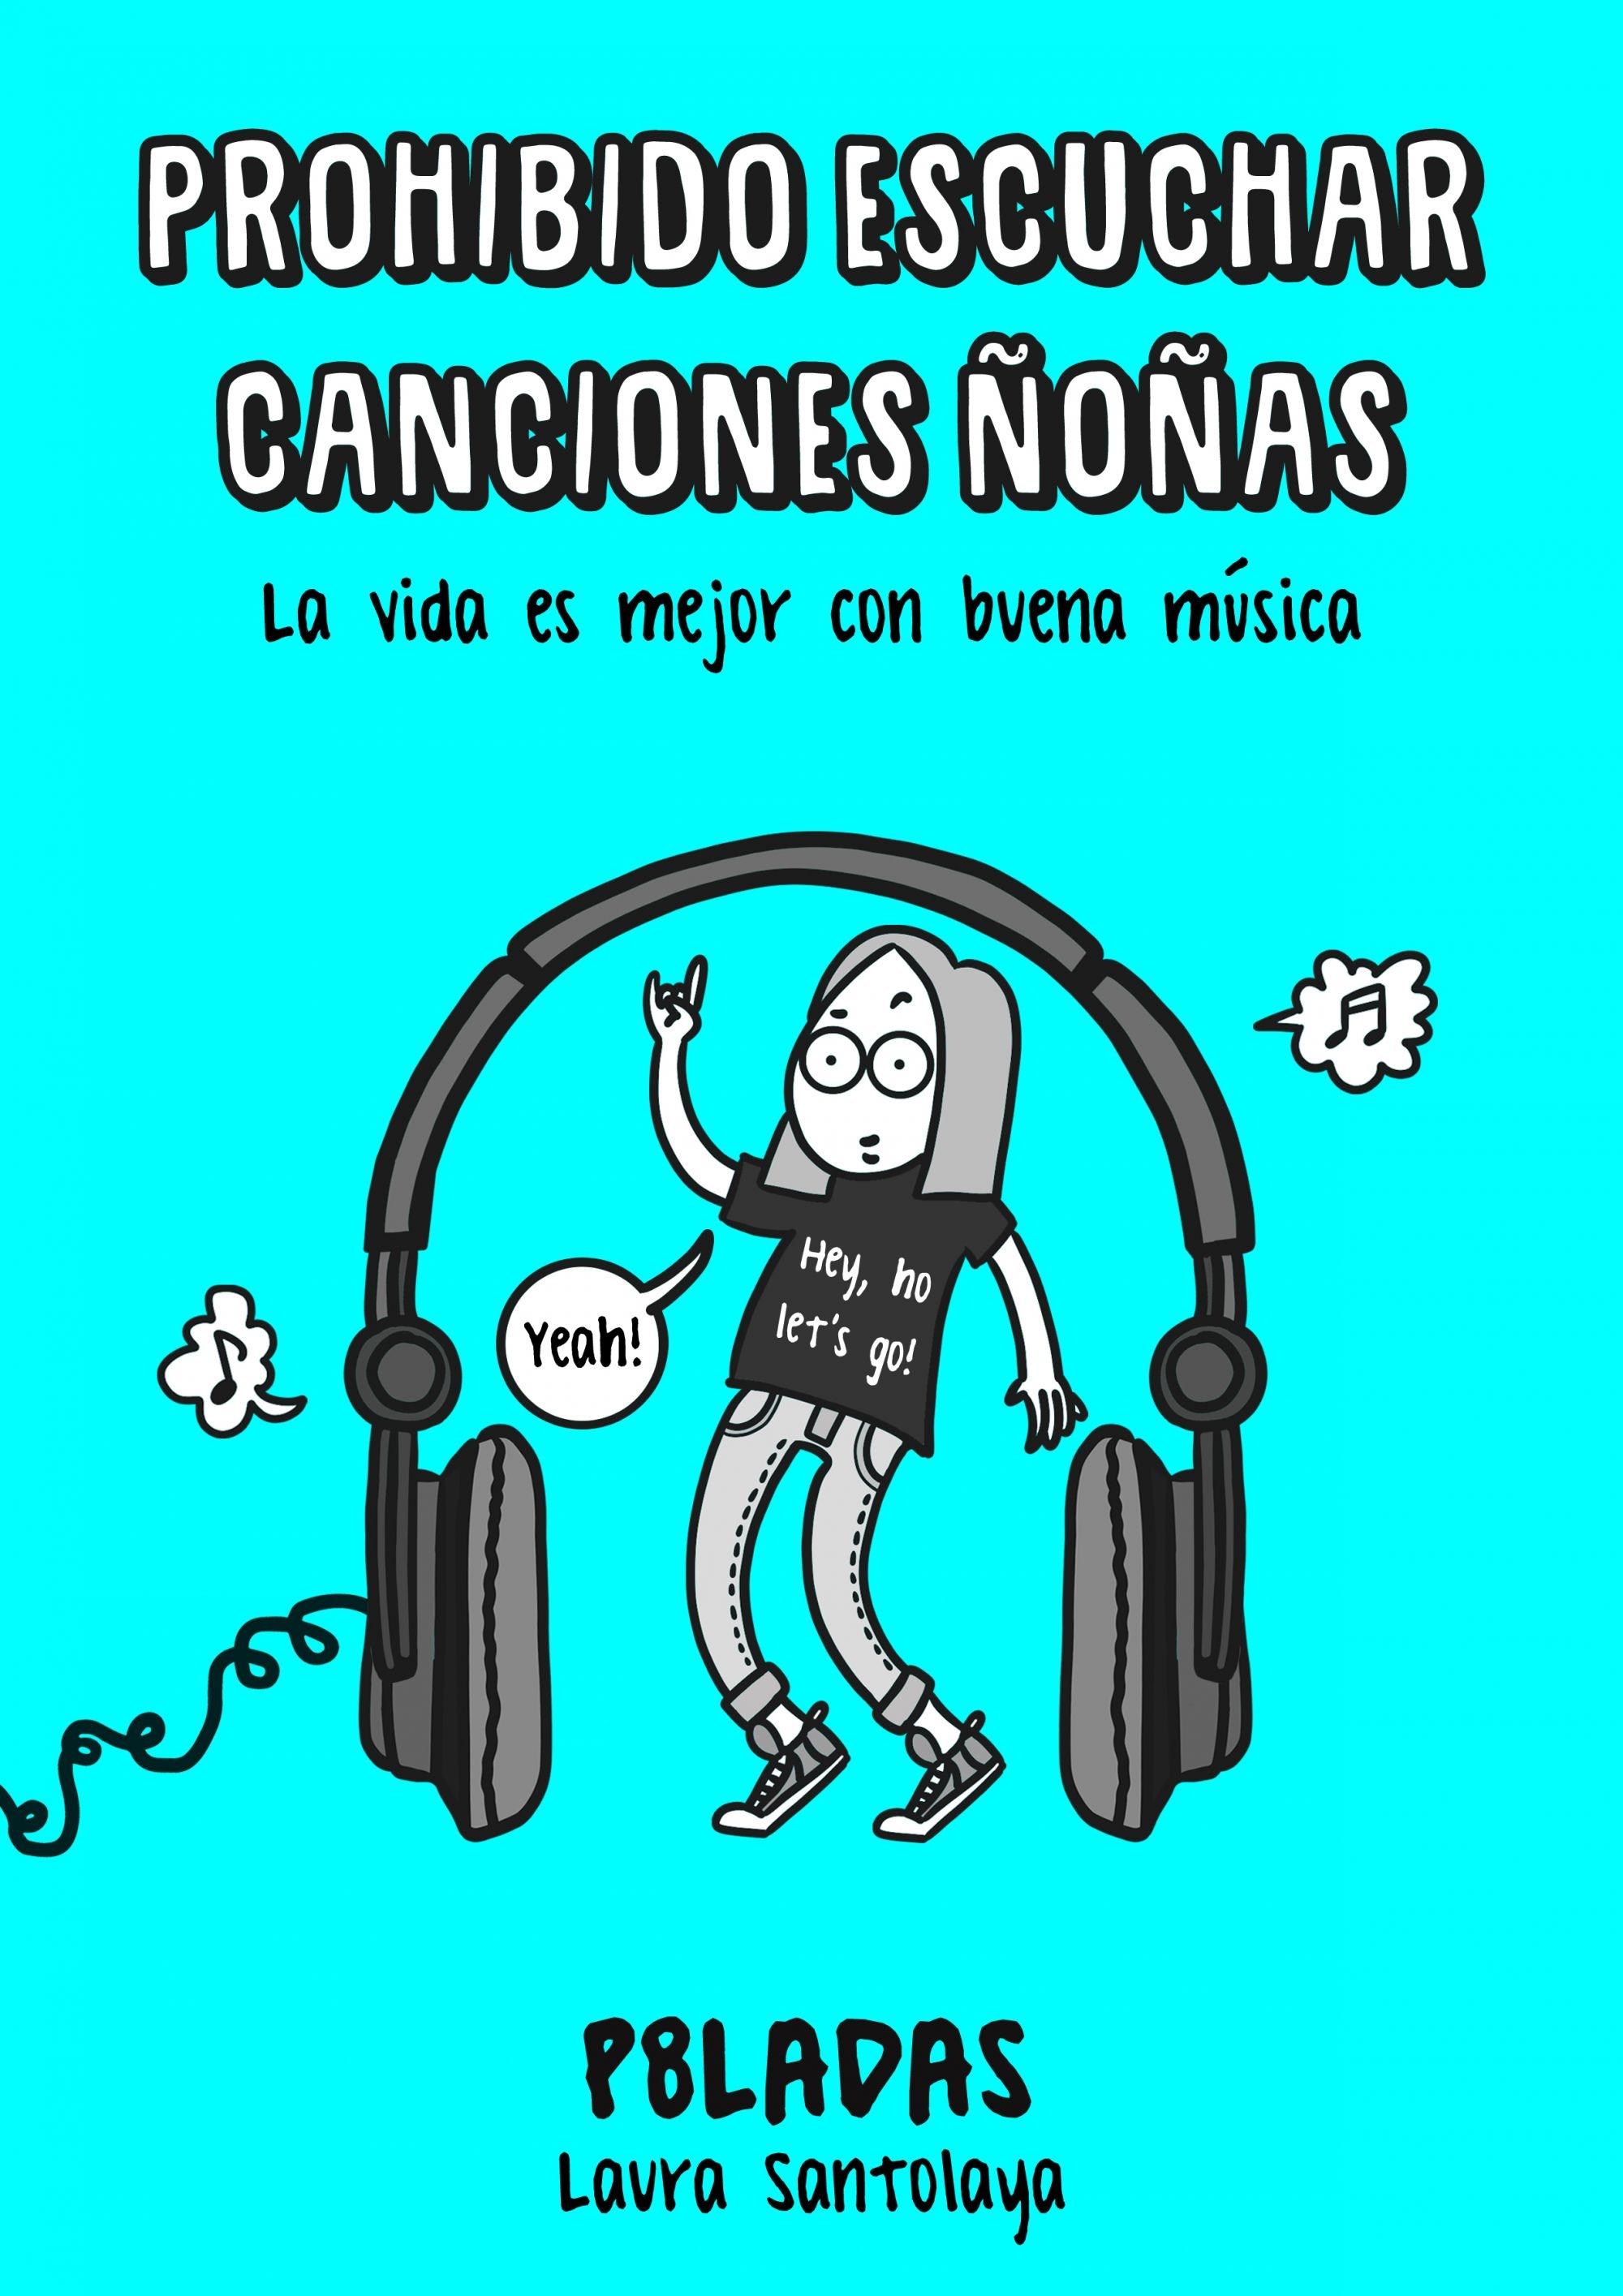 Prohibido Escuchar Canciones Ñoñas "La Vida Es Mejor con Buena Música". 